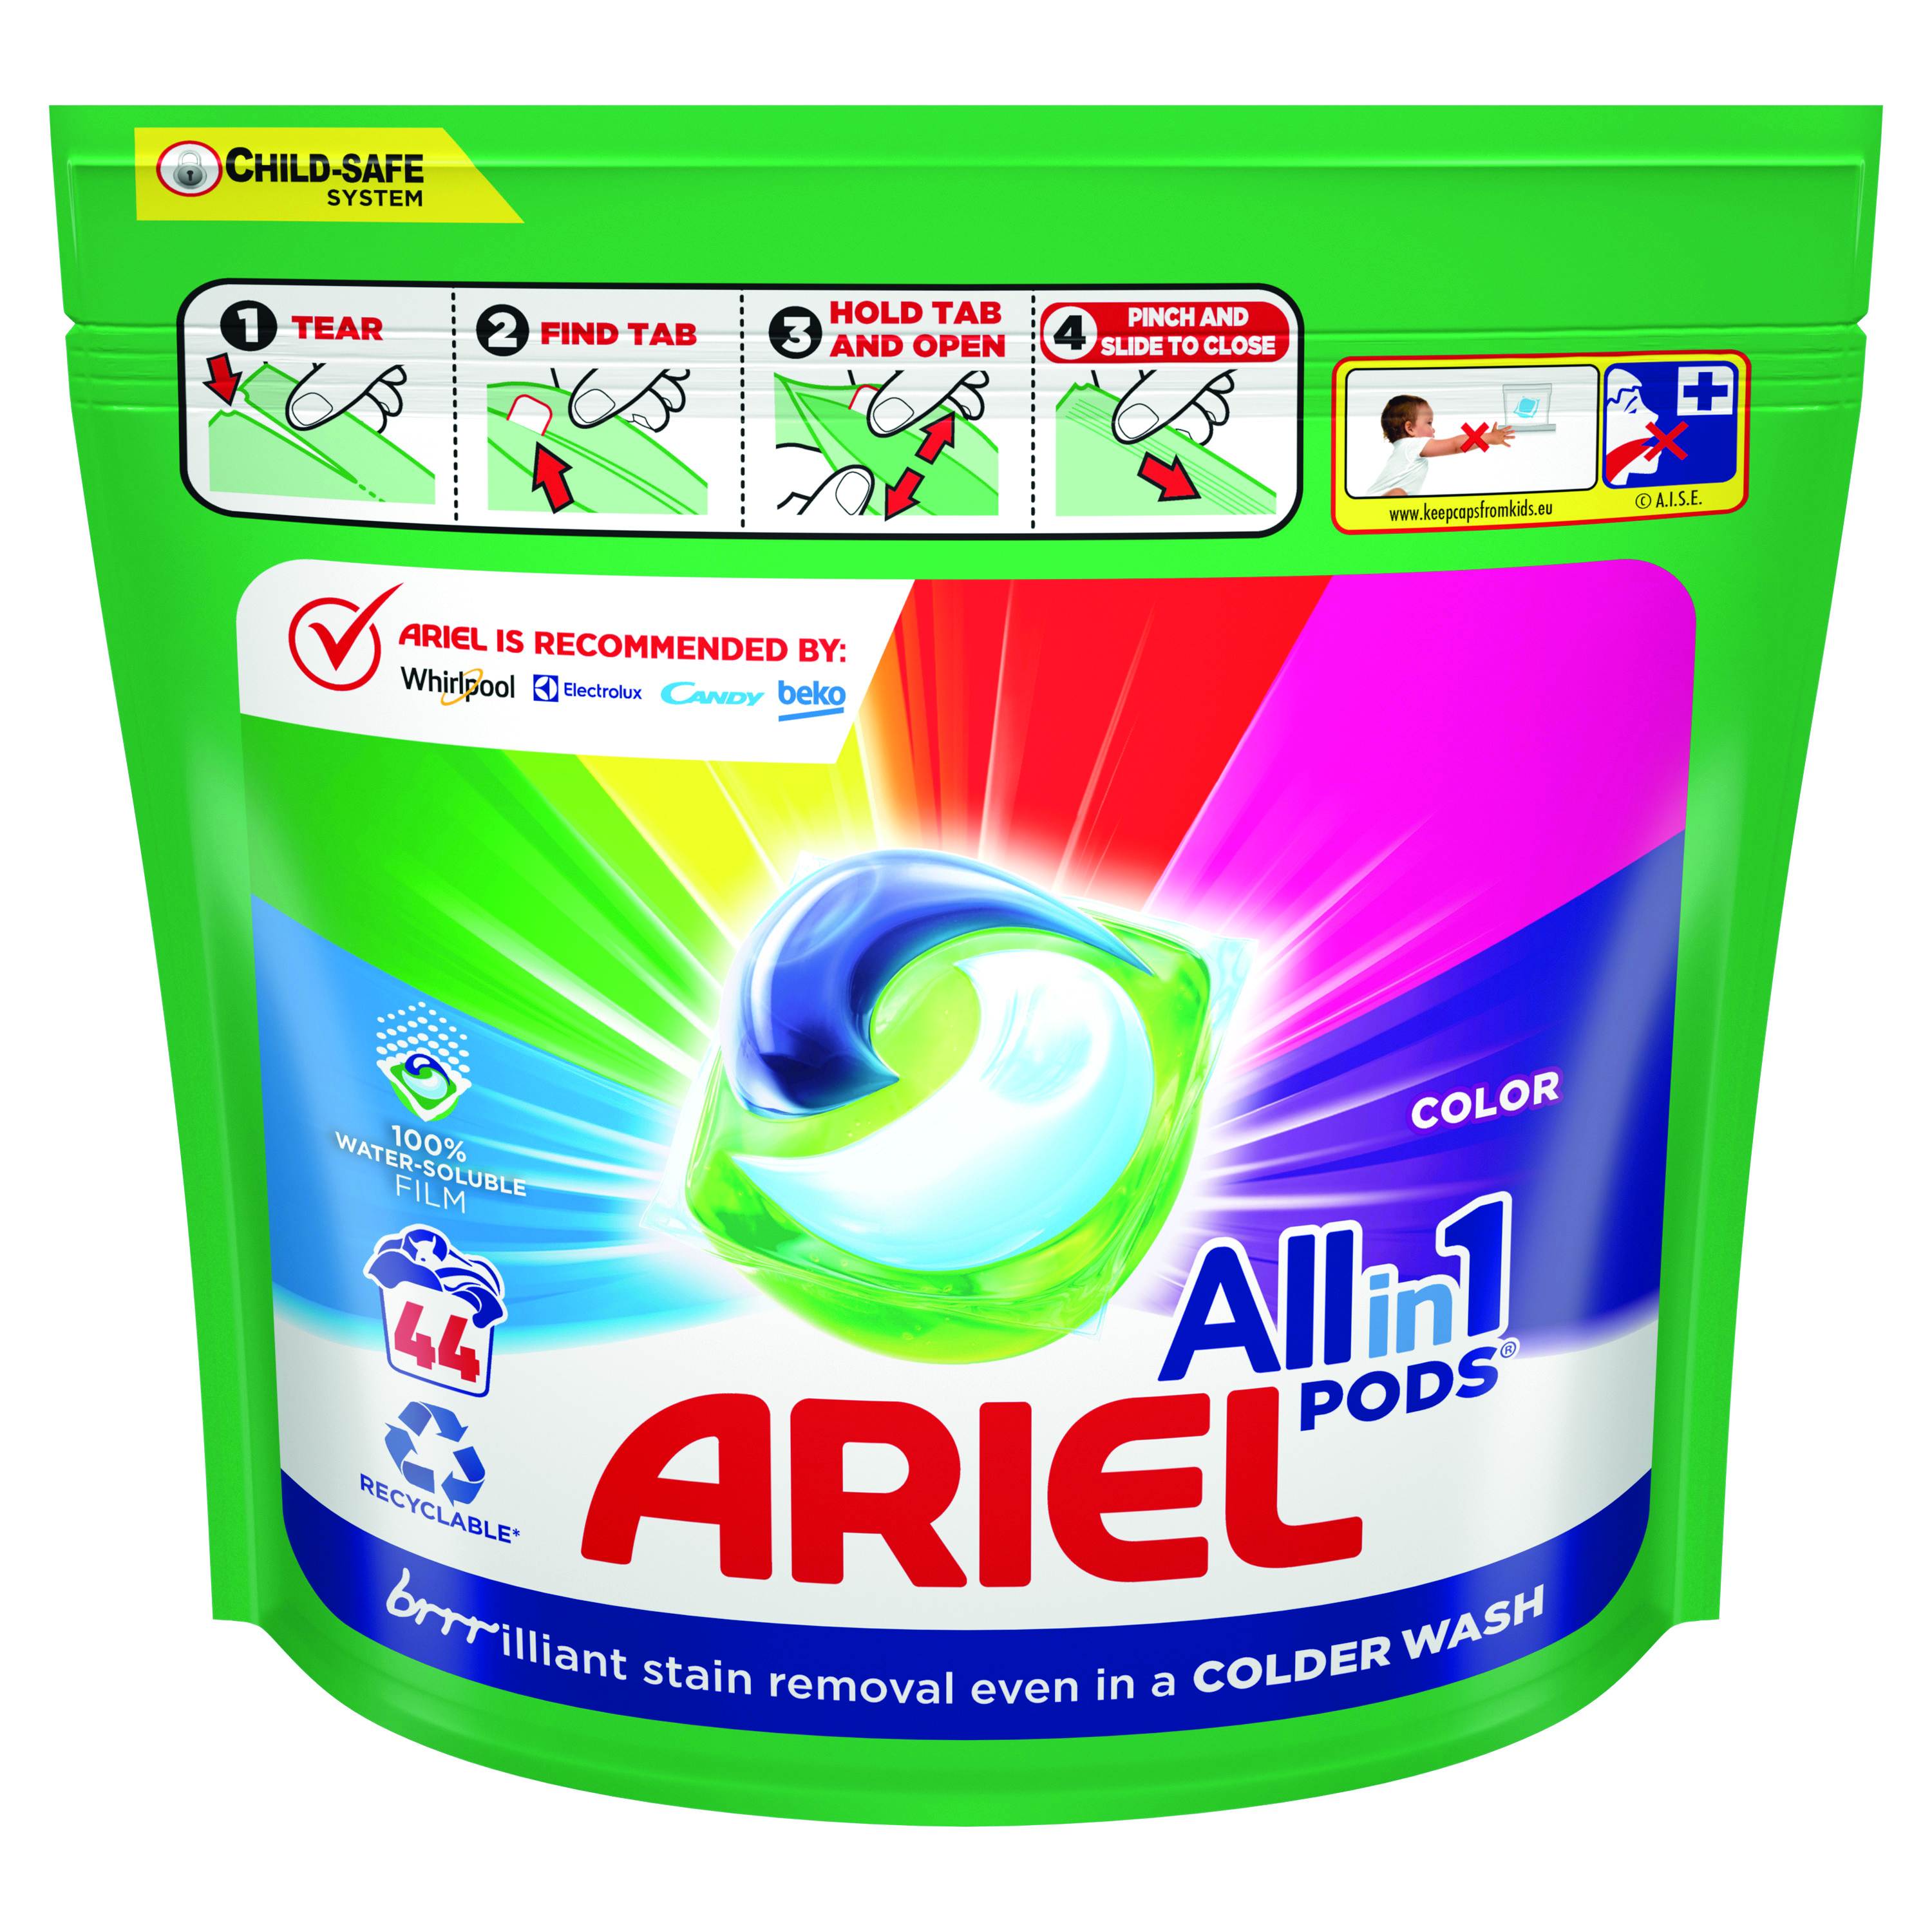 Ariel gelové kapsle Color 44 dávek/sáček